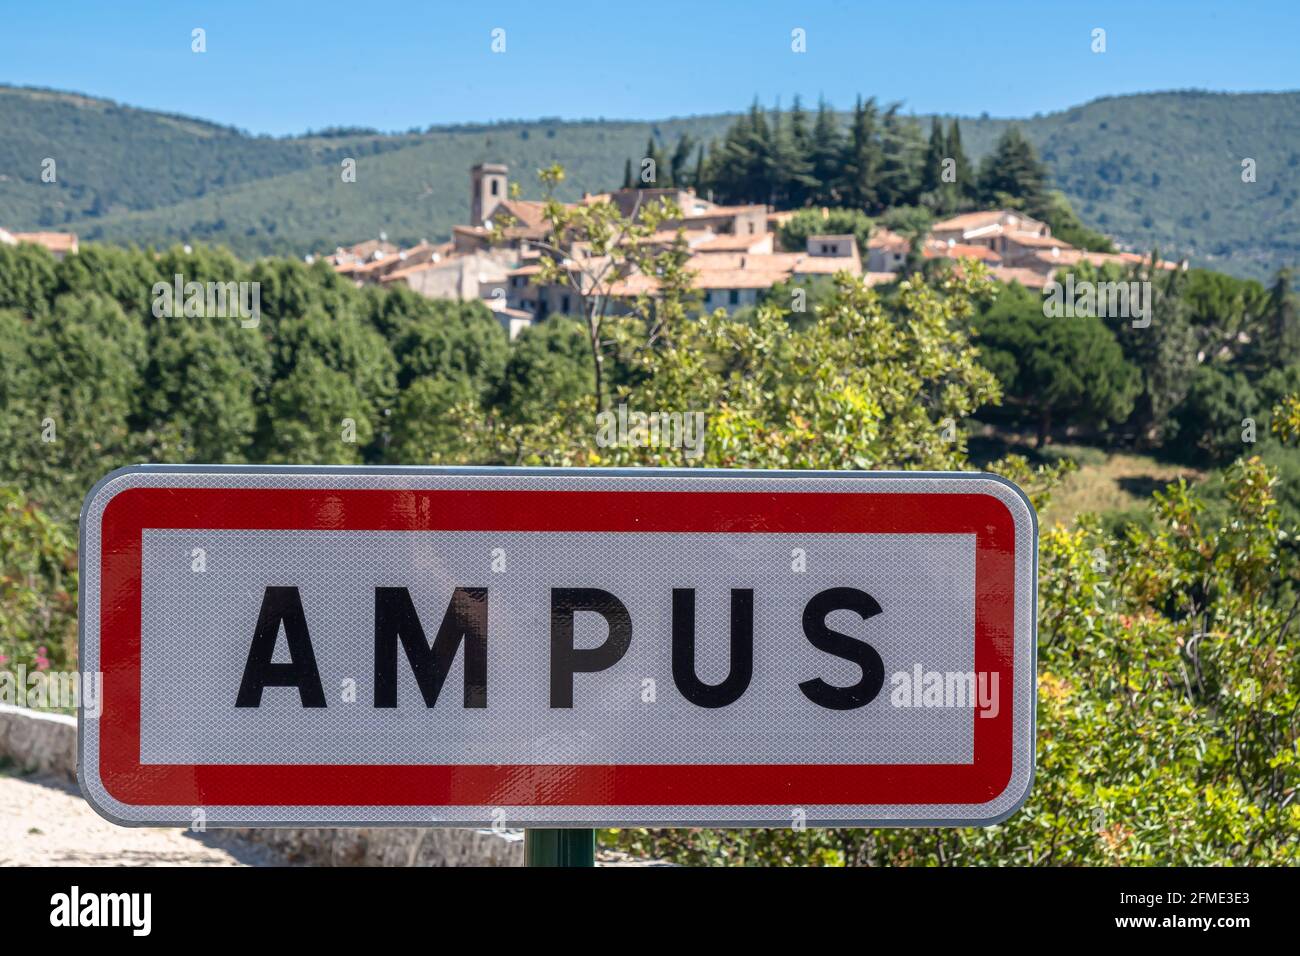 Ampus, France - 5 juillet 2020 : Ampus est une commune française, située dans le département du Var et la région Provence-Alpes-Côte d'Azur. Banque D'Images